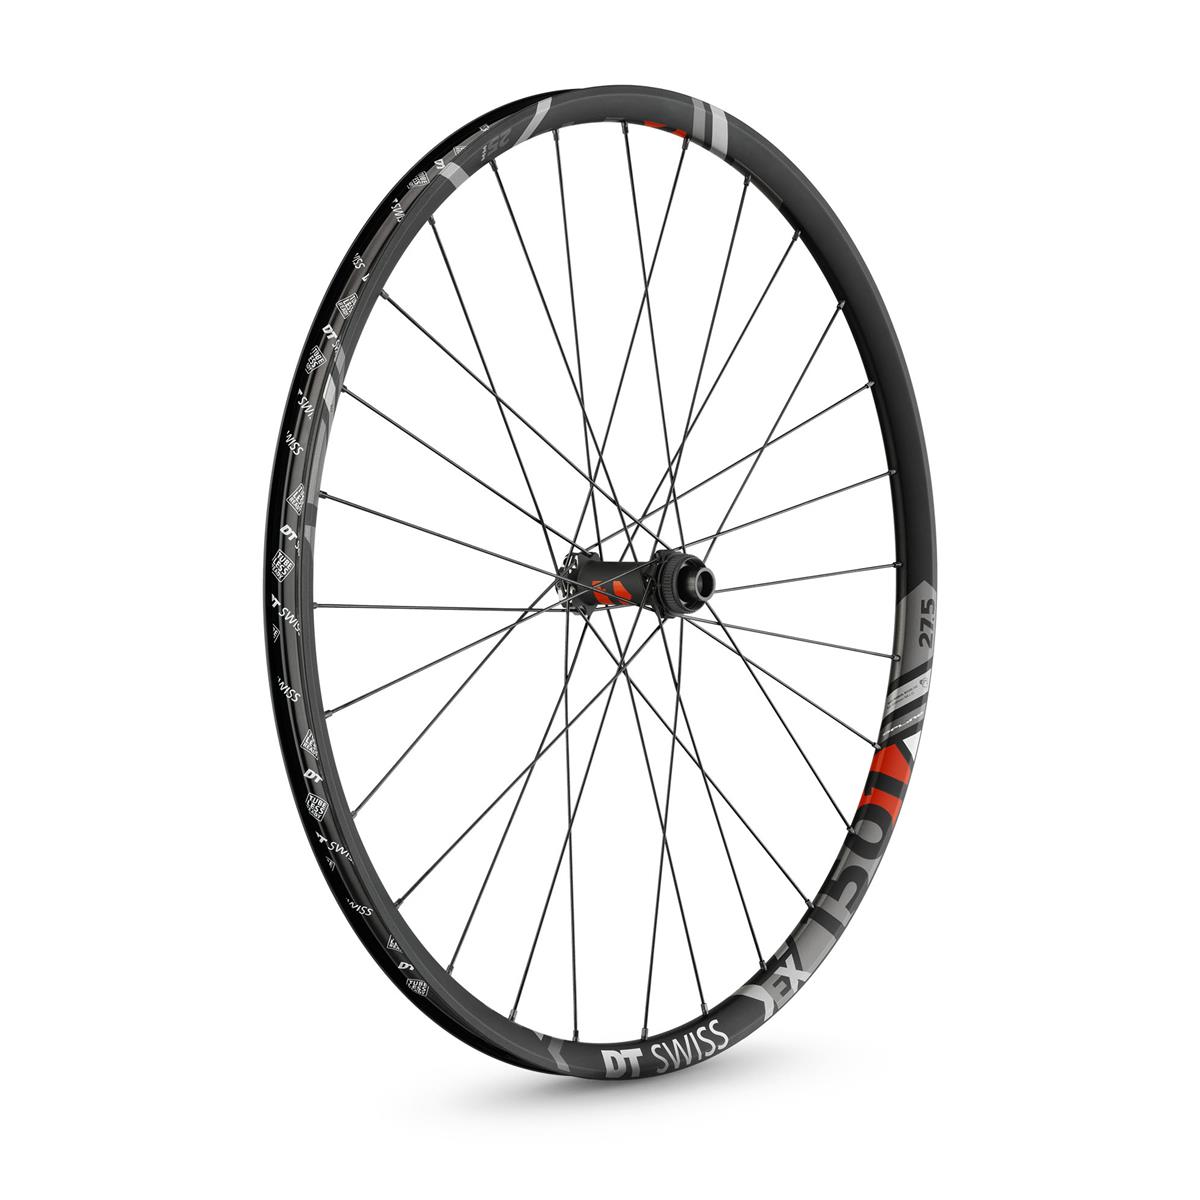 DT Swiss Wheel EX 1501 Spline One Front, 27,5 Inches, 15x100 mm TA, Center Lock, 30 mm